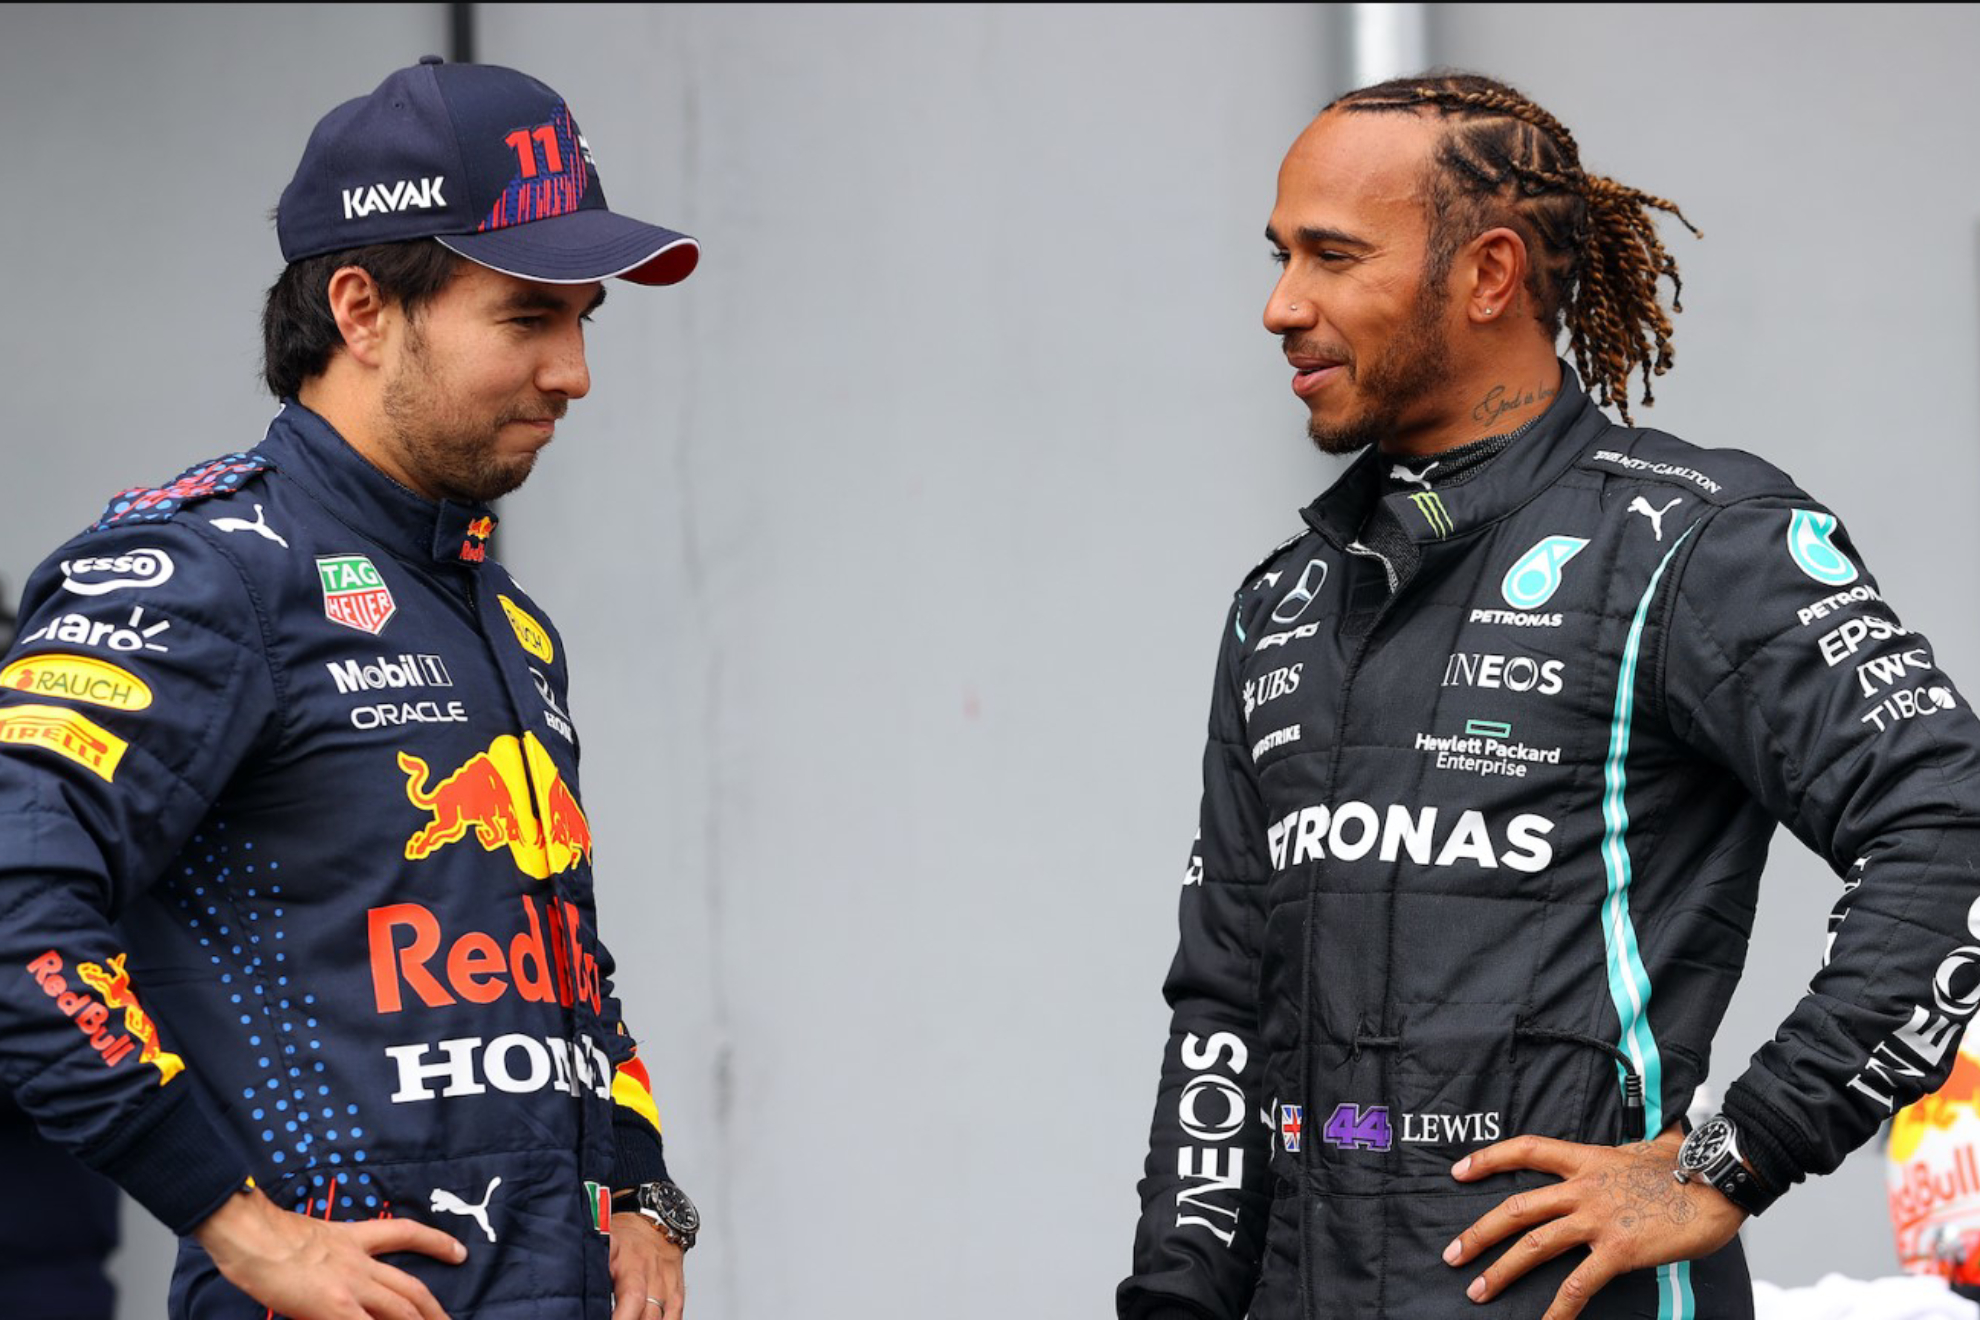 Checo Prez y Lewis Hamilton pelearn a muerte por el Subcampeonato de pilotos de la F1